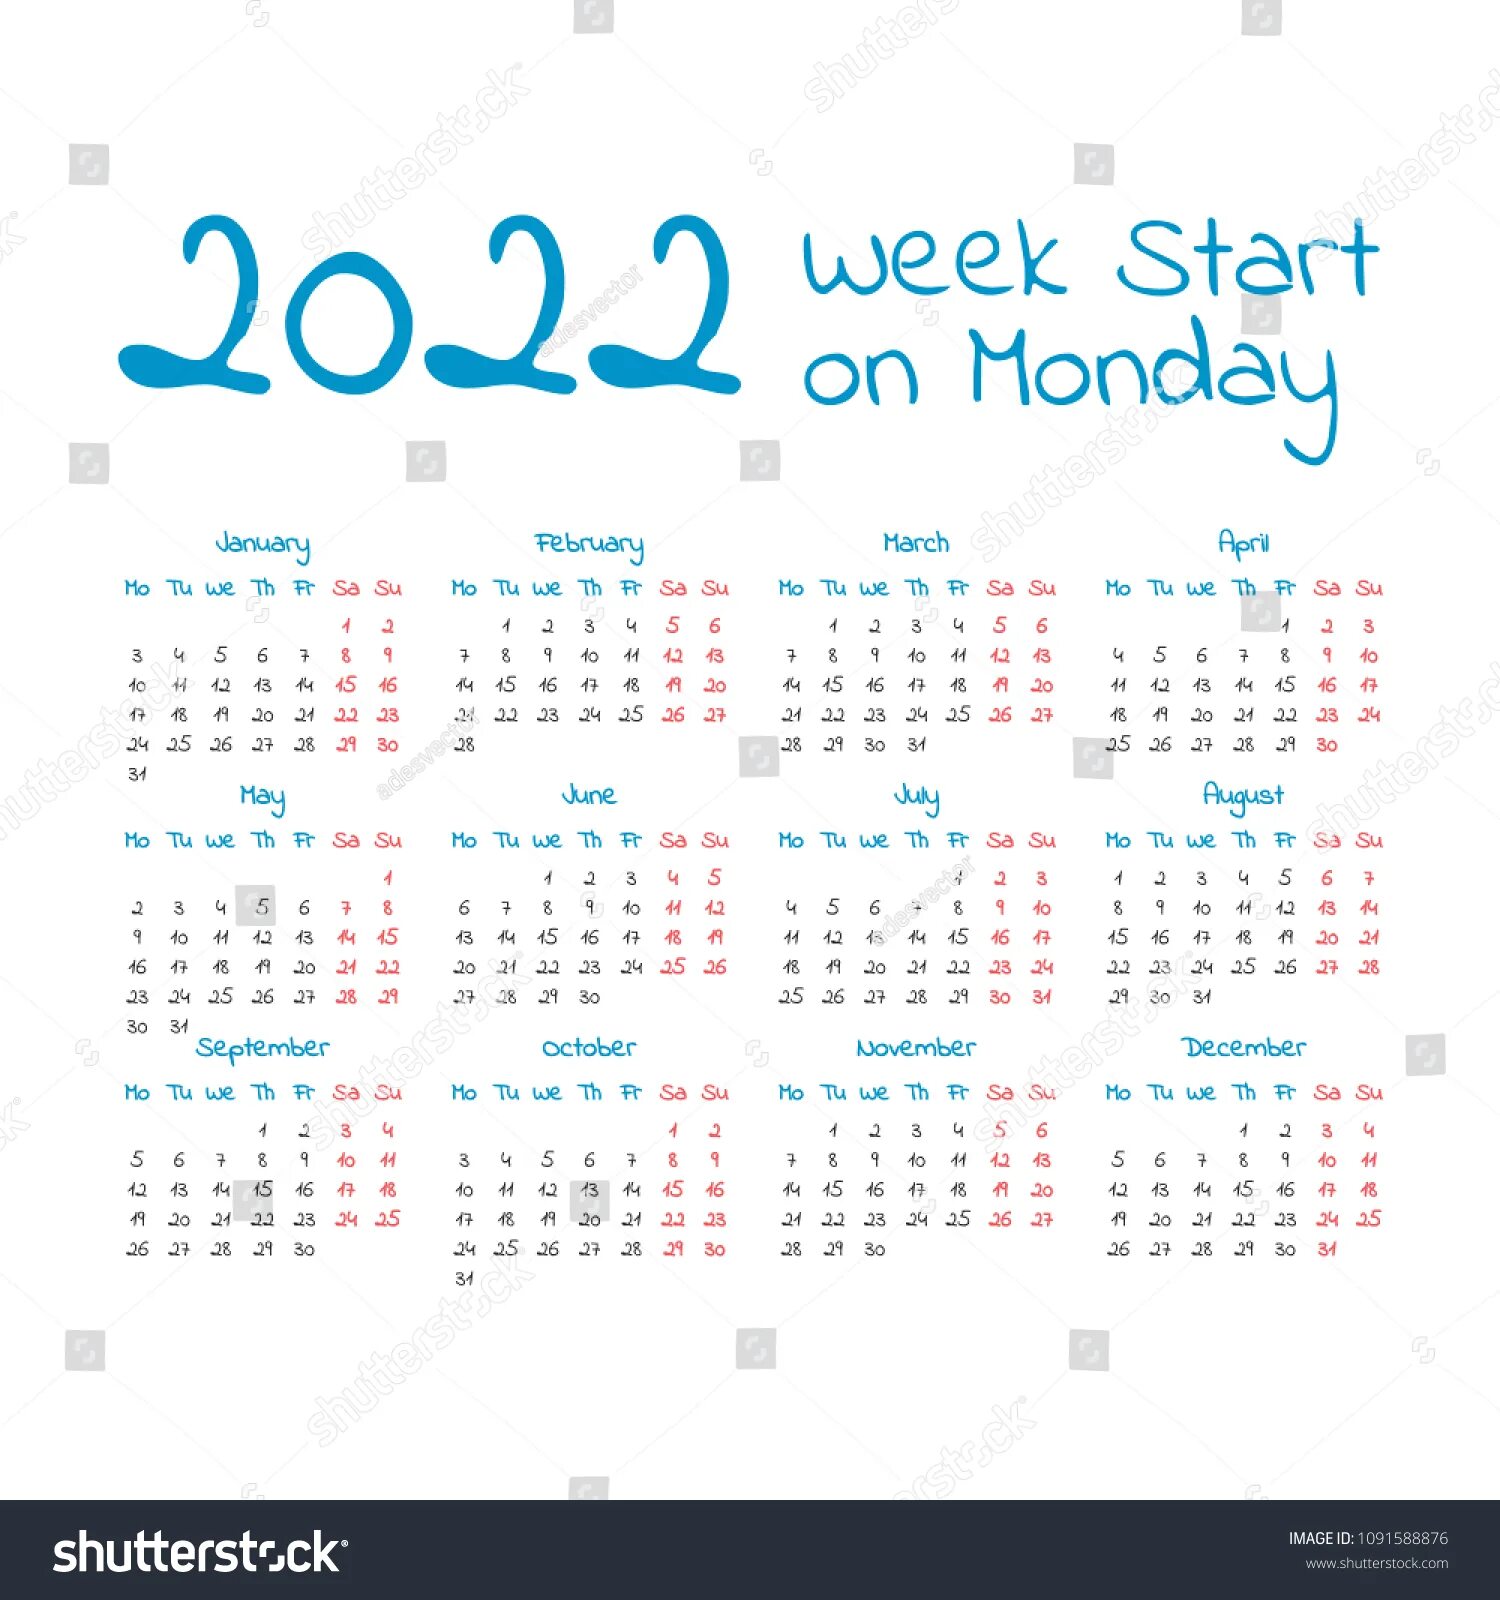 Календарь на 2027 год. Производственный календарь на 2027 год. Календарь 2027 года по месяцам. Календарь 2027 русский. Календарь 2027г